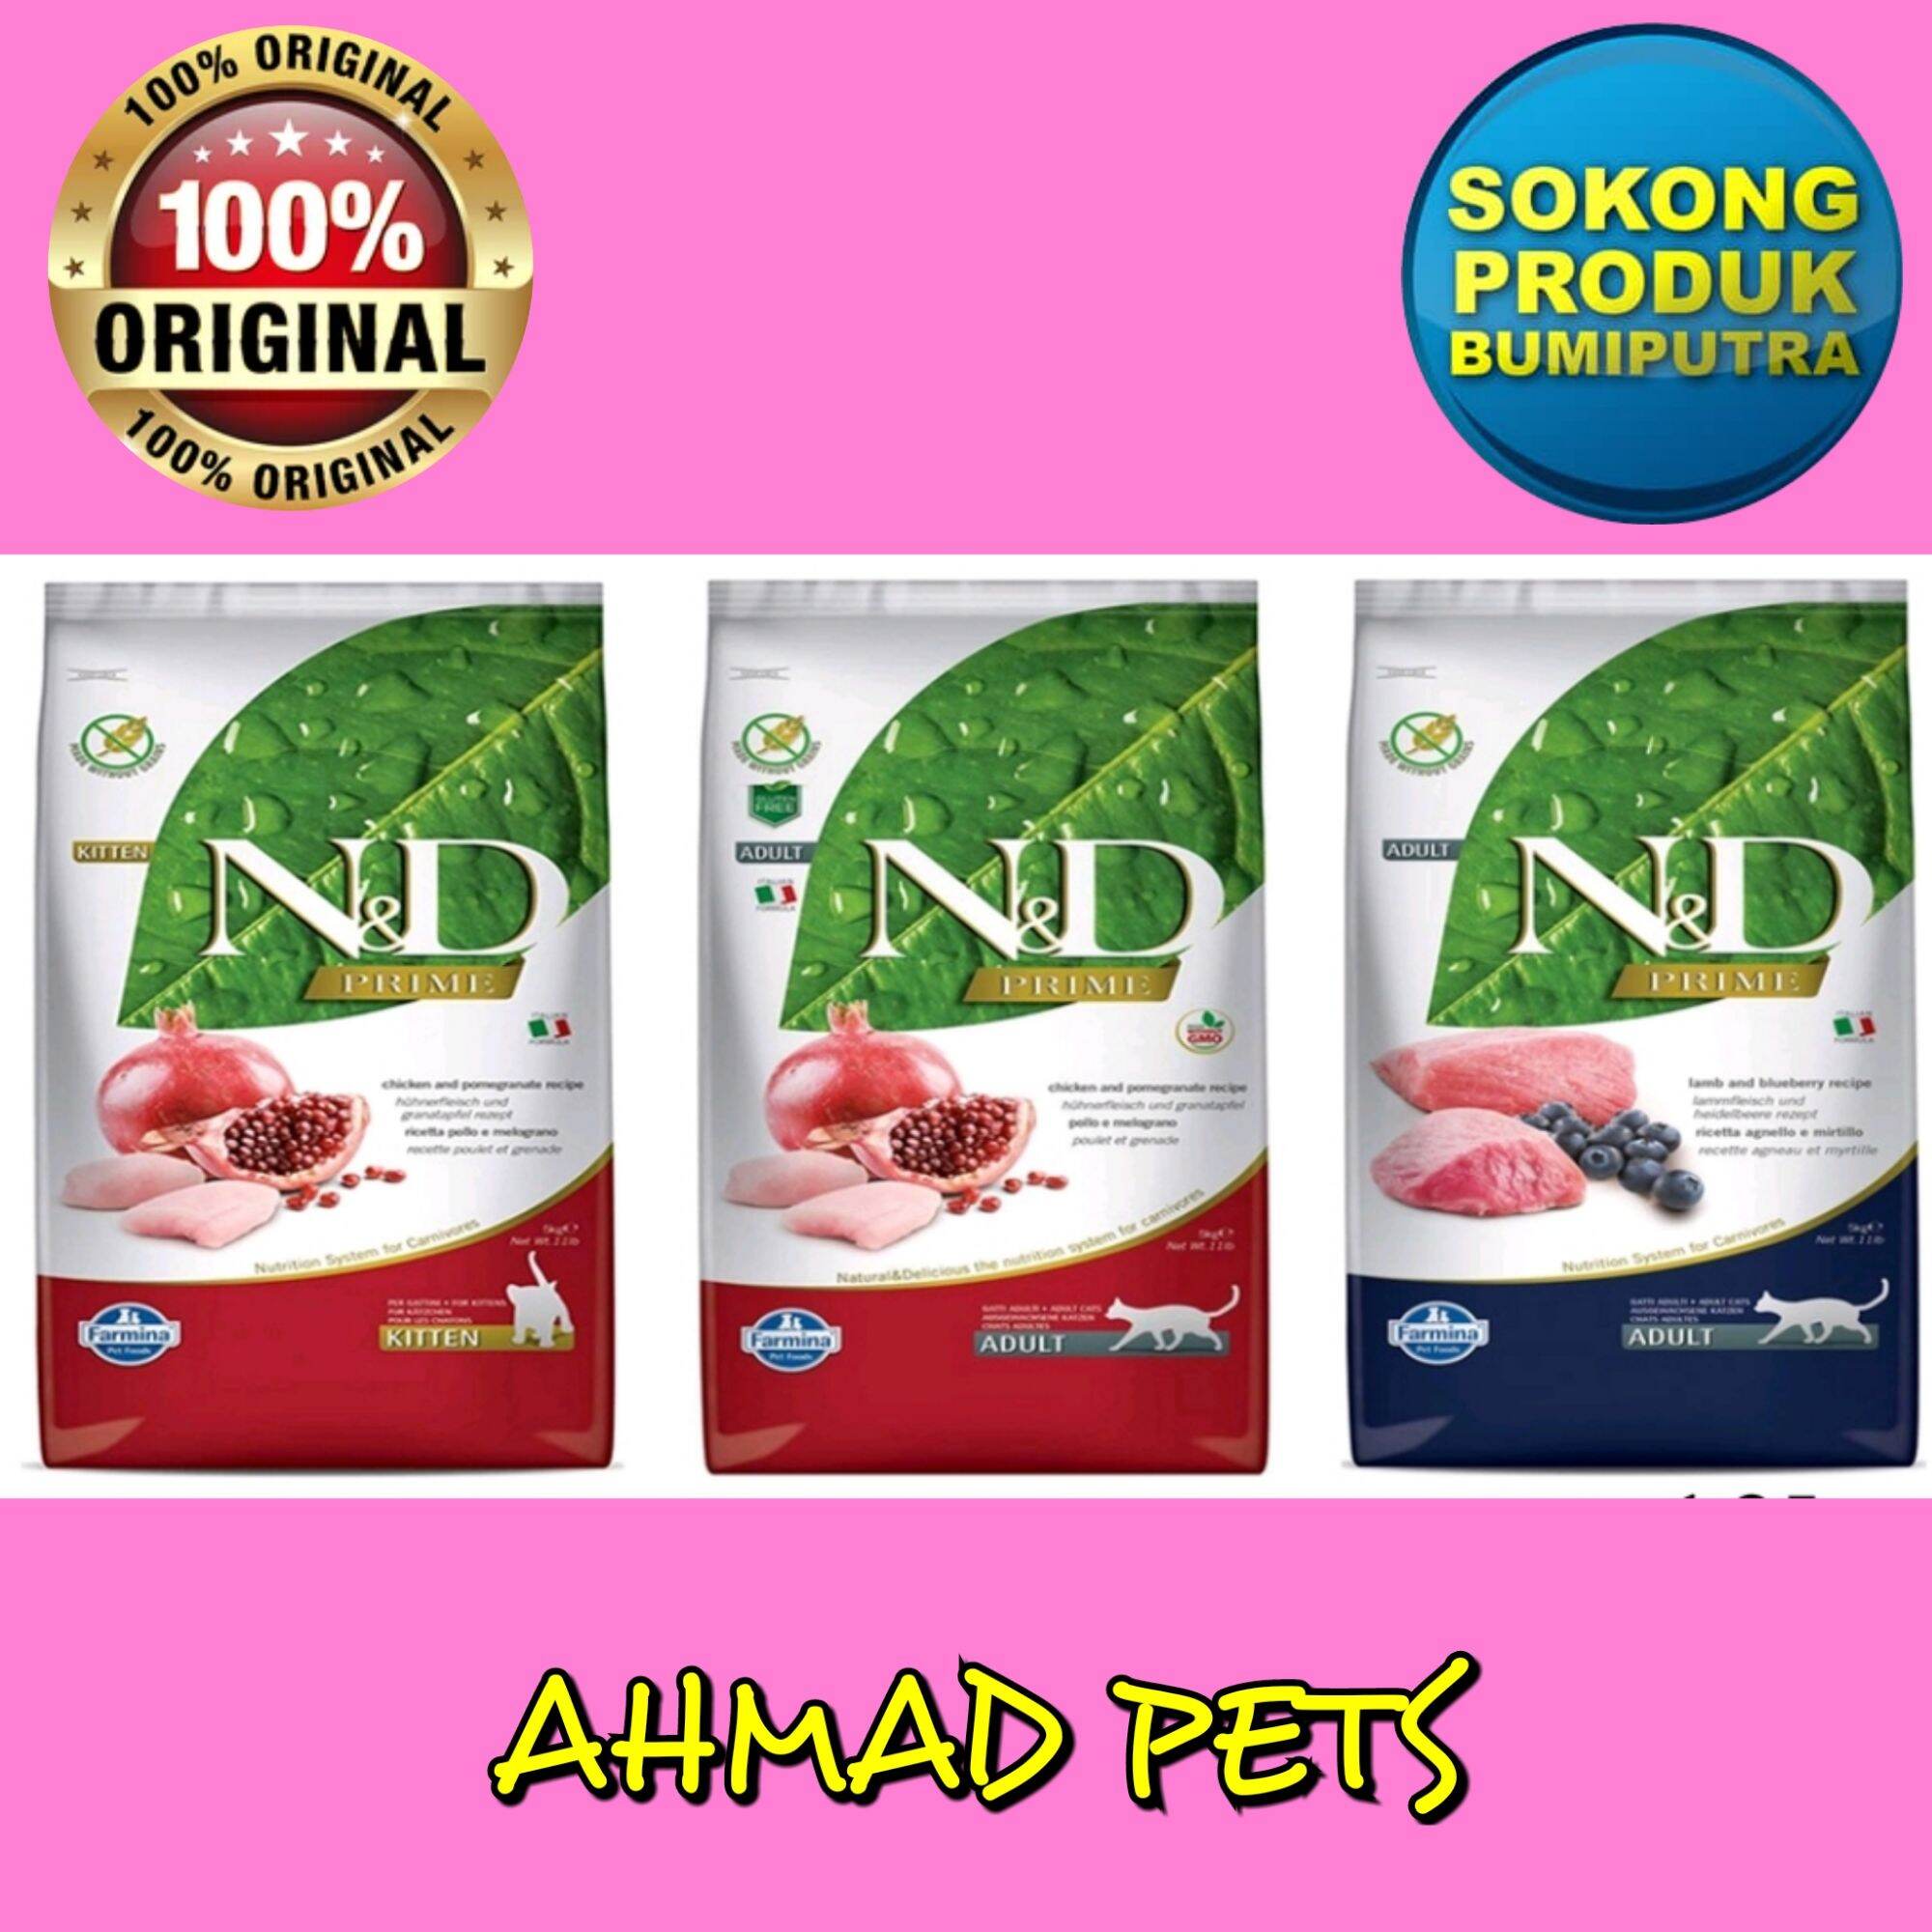 N&d cat food